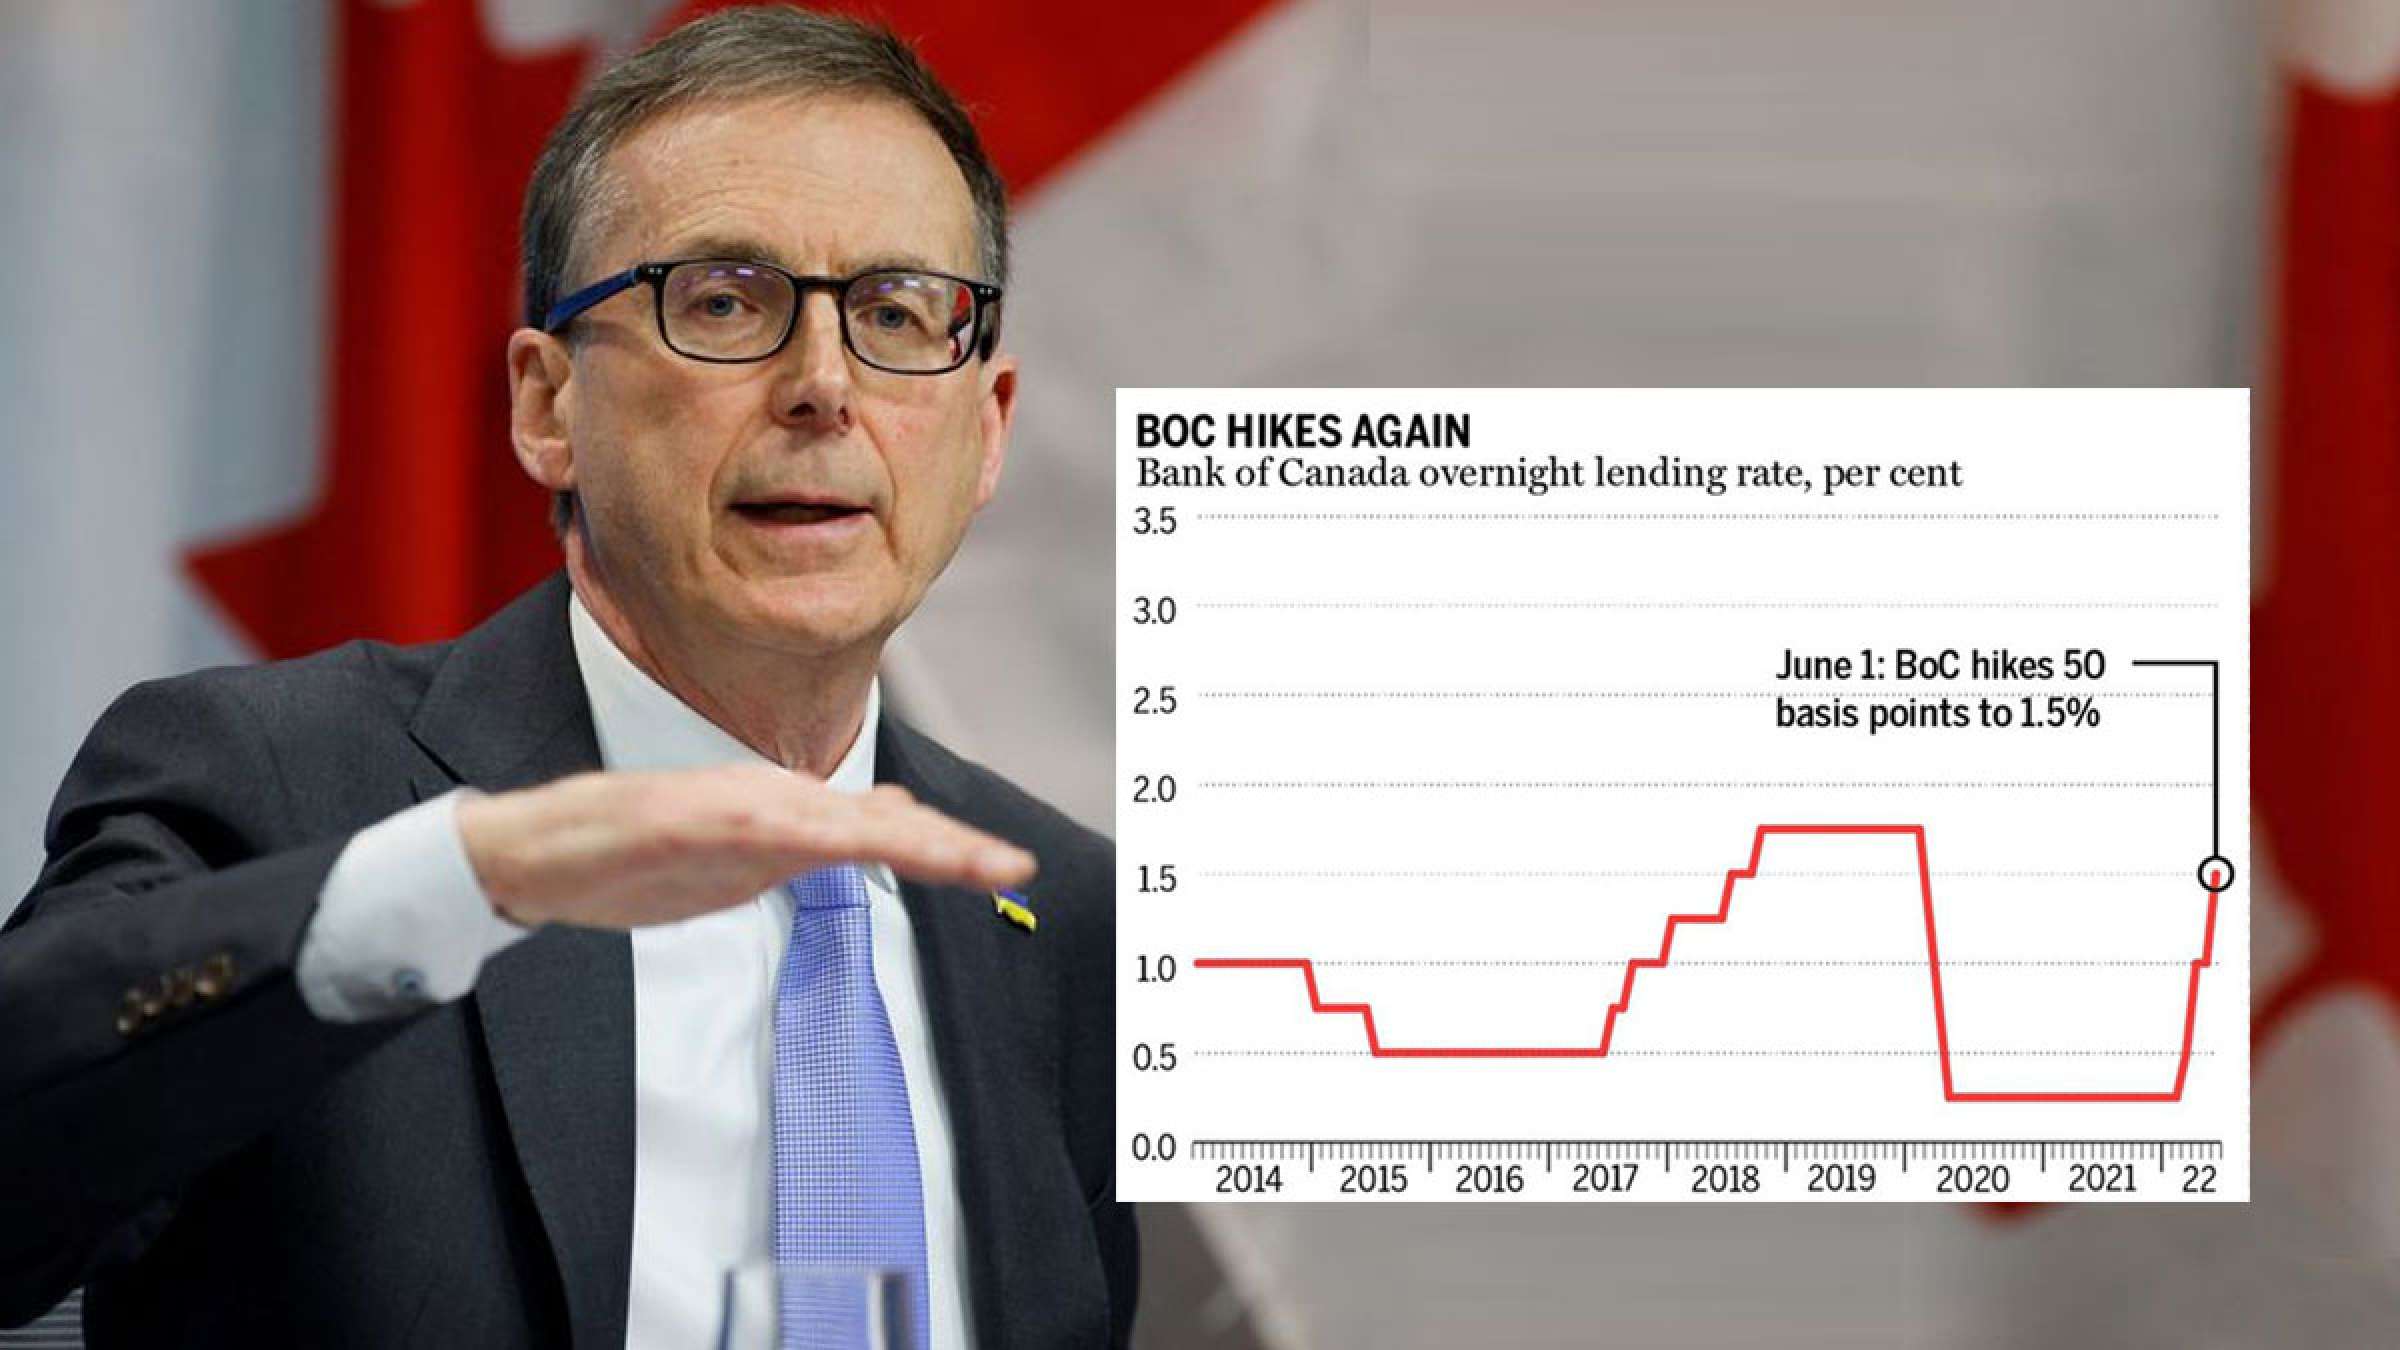 خبر-کانادا-نرخ-بهره-ها-باز-هم-۰۵-درصد-بالا-رفت-بانک-مرکزی-کانادا-تازه-شروع